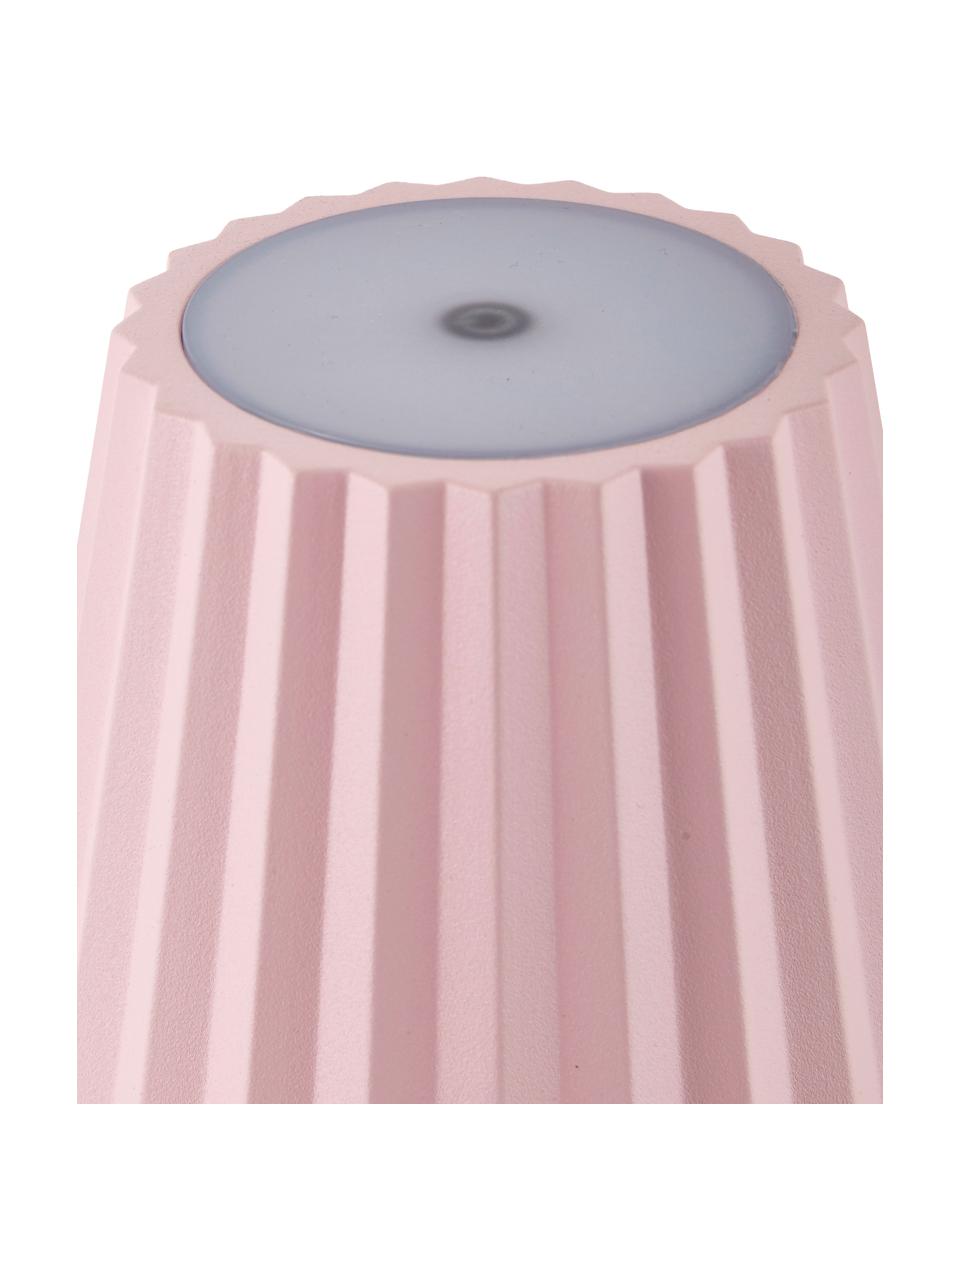 Venkovní přenosná LED lampa Trellia, Růžová